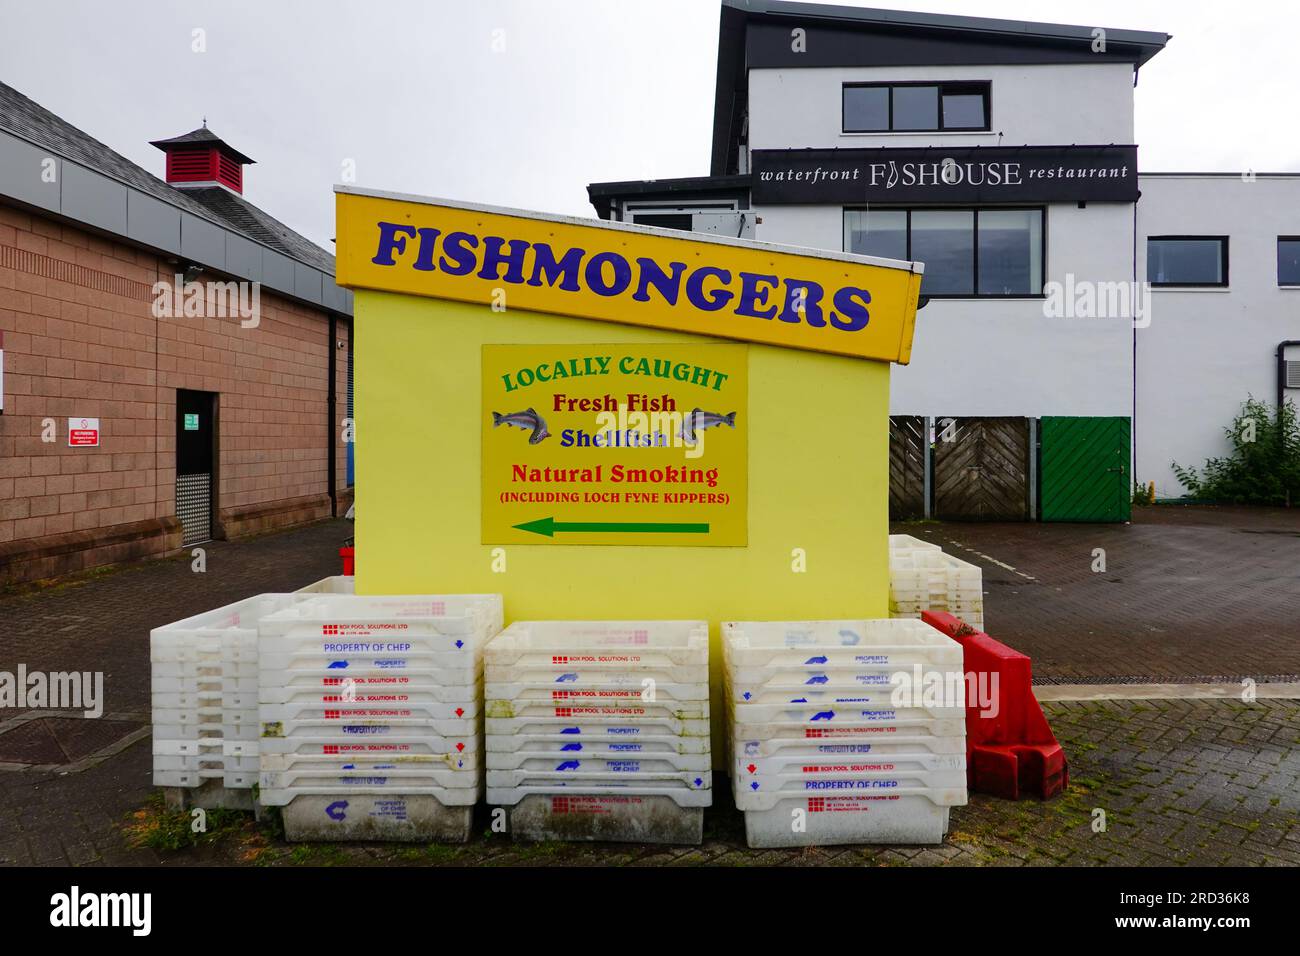 Fishmongers, locally caught fresh fish, shellfish, Oban, Scotland, UK. Stock Photo